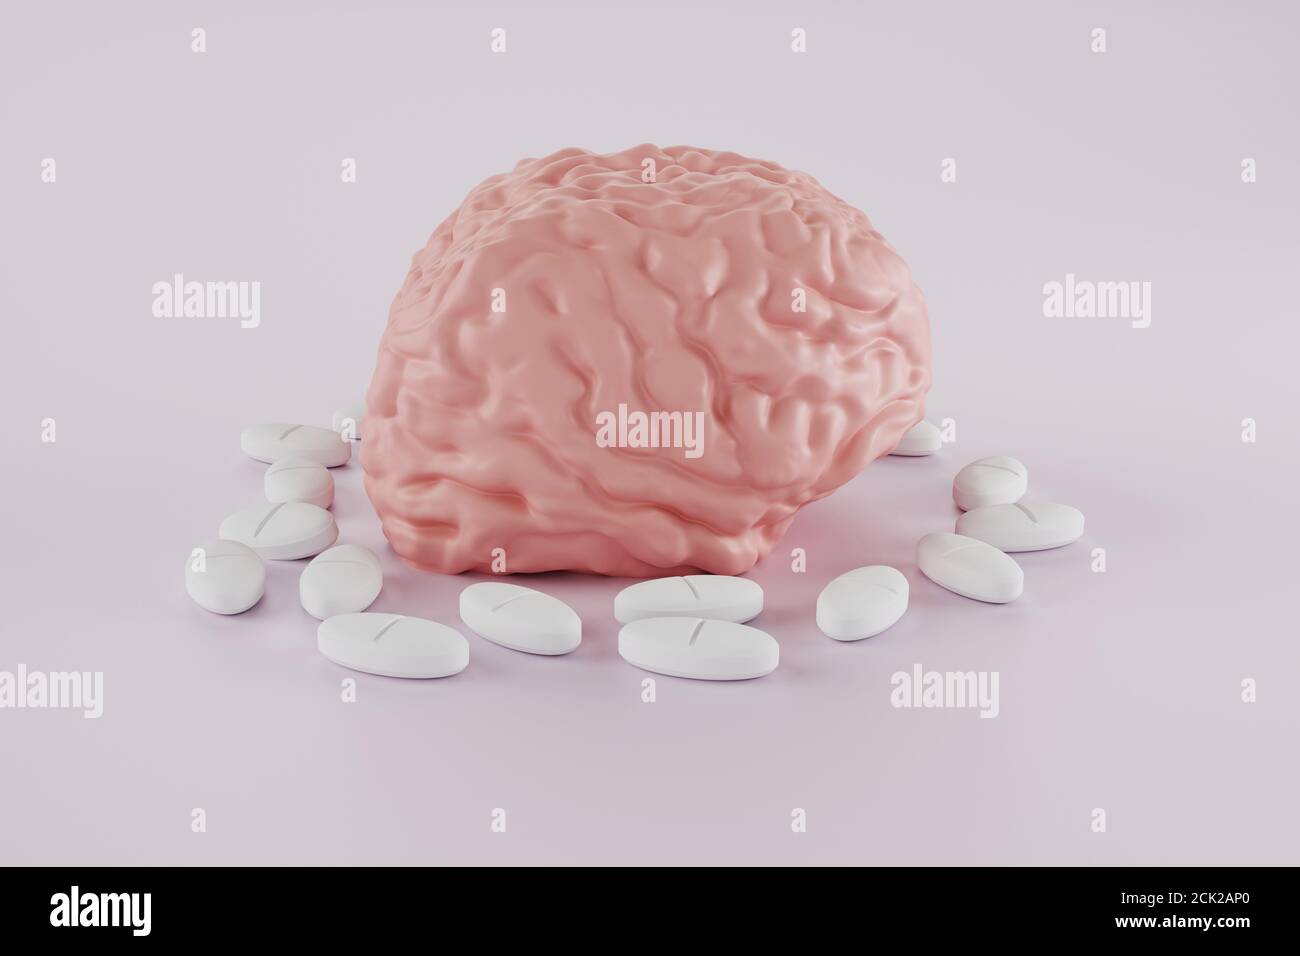 cerebro humano rodeado de píldoras sobre fondo claro, nootrópico para el cerebro o píldora de dolor de cabeza, un fármaco para mejorar la actividad cerebral, adicción a la píldora, lado Foto de stock